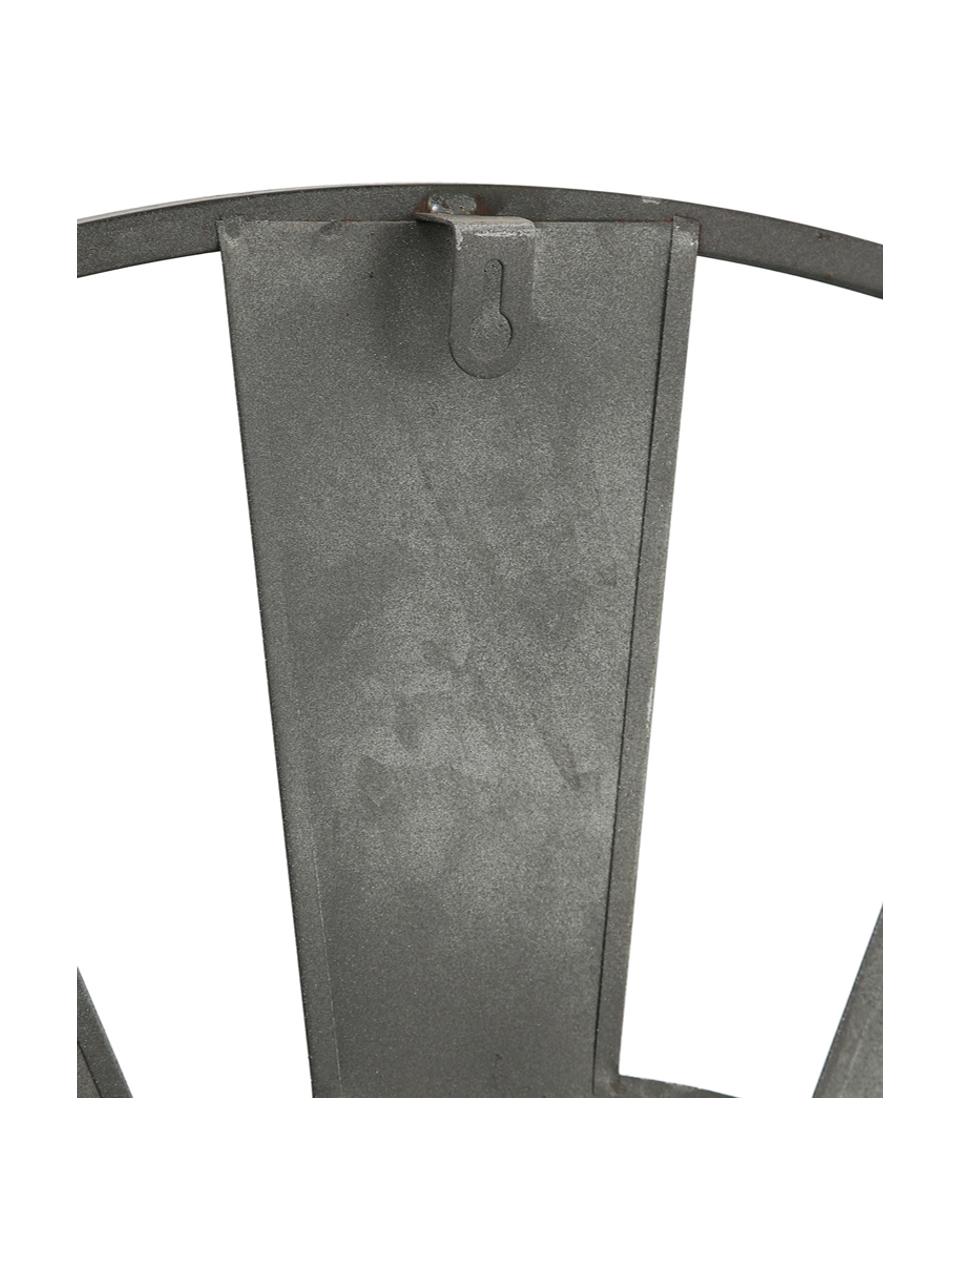 Wandklok Anatol, Verzinkt metaal, Zinkkleurig, zwart, bruin, Ø 73 cm